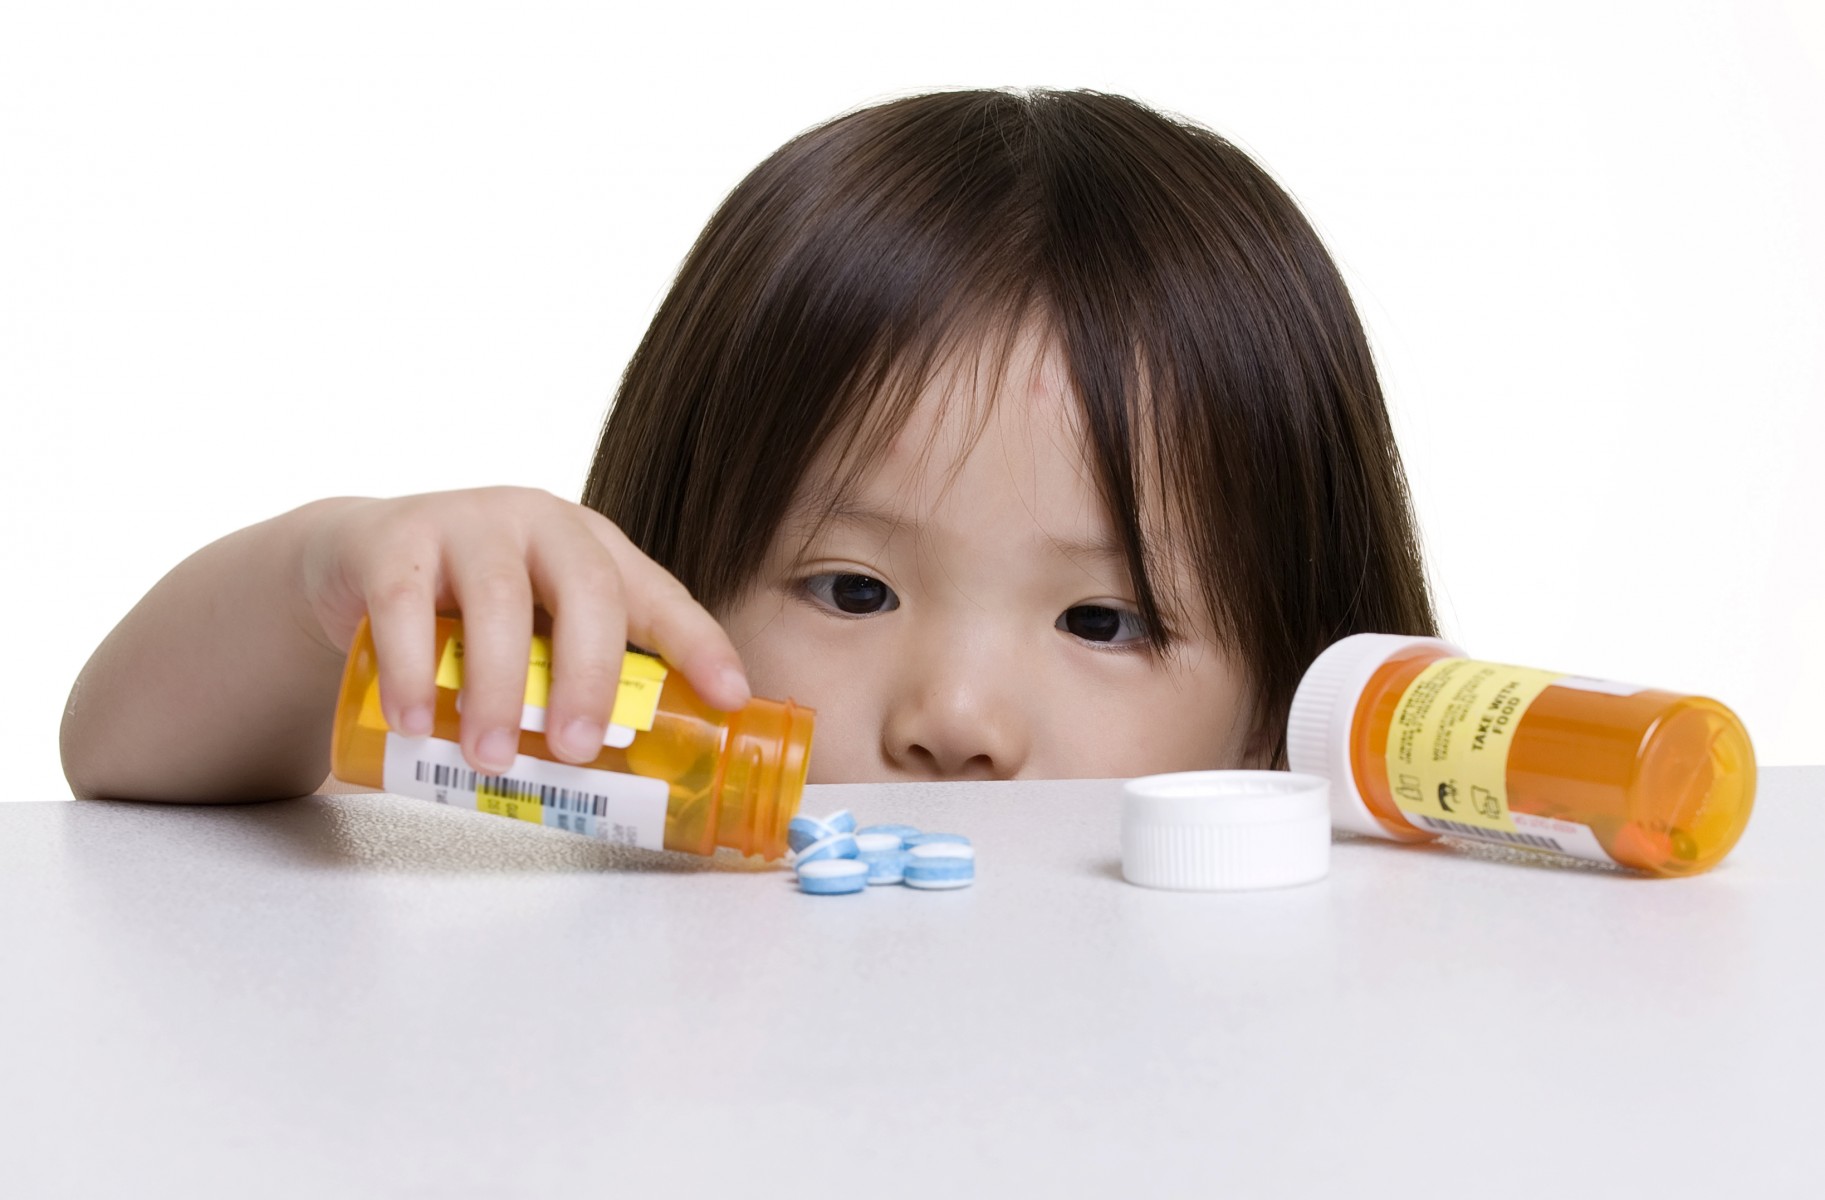 Thuốc giả và thuốc kém chất lượng đã gây ra cái chết của nhiều trẻ em